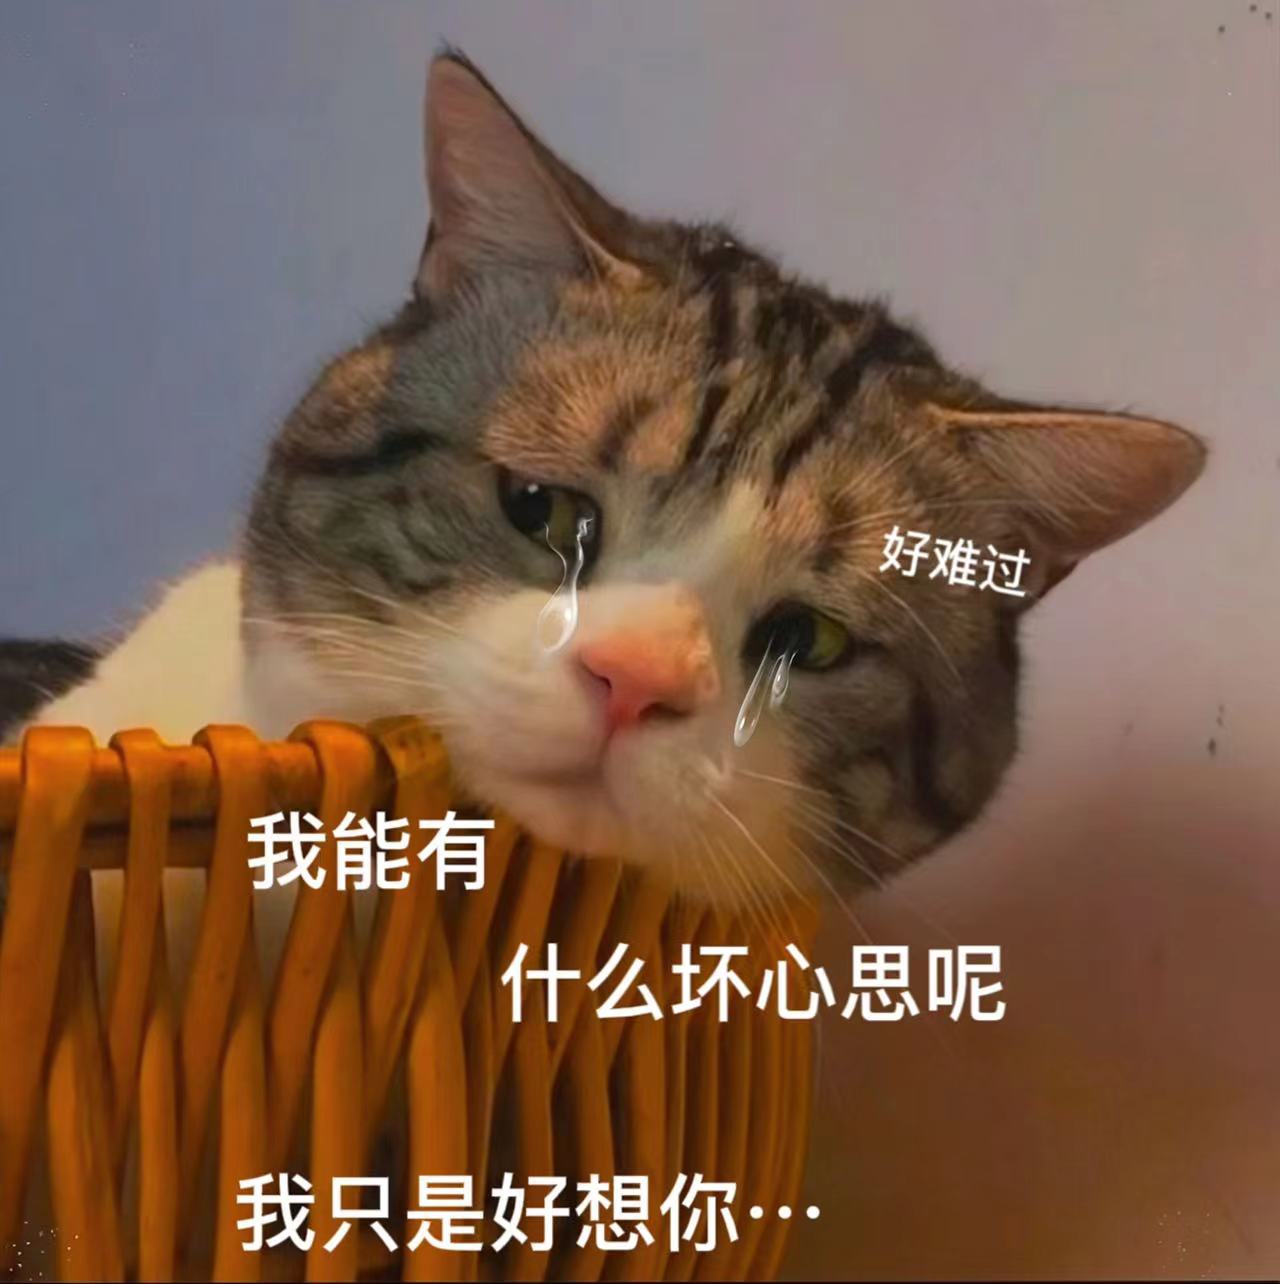 猫咪委屈哭的图片大全-图库-五毛网